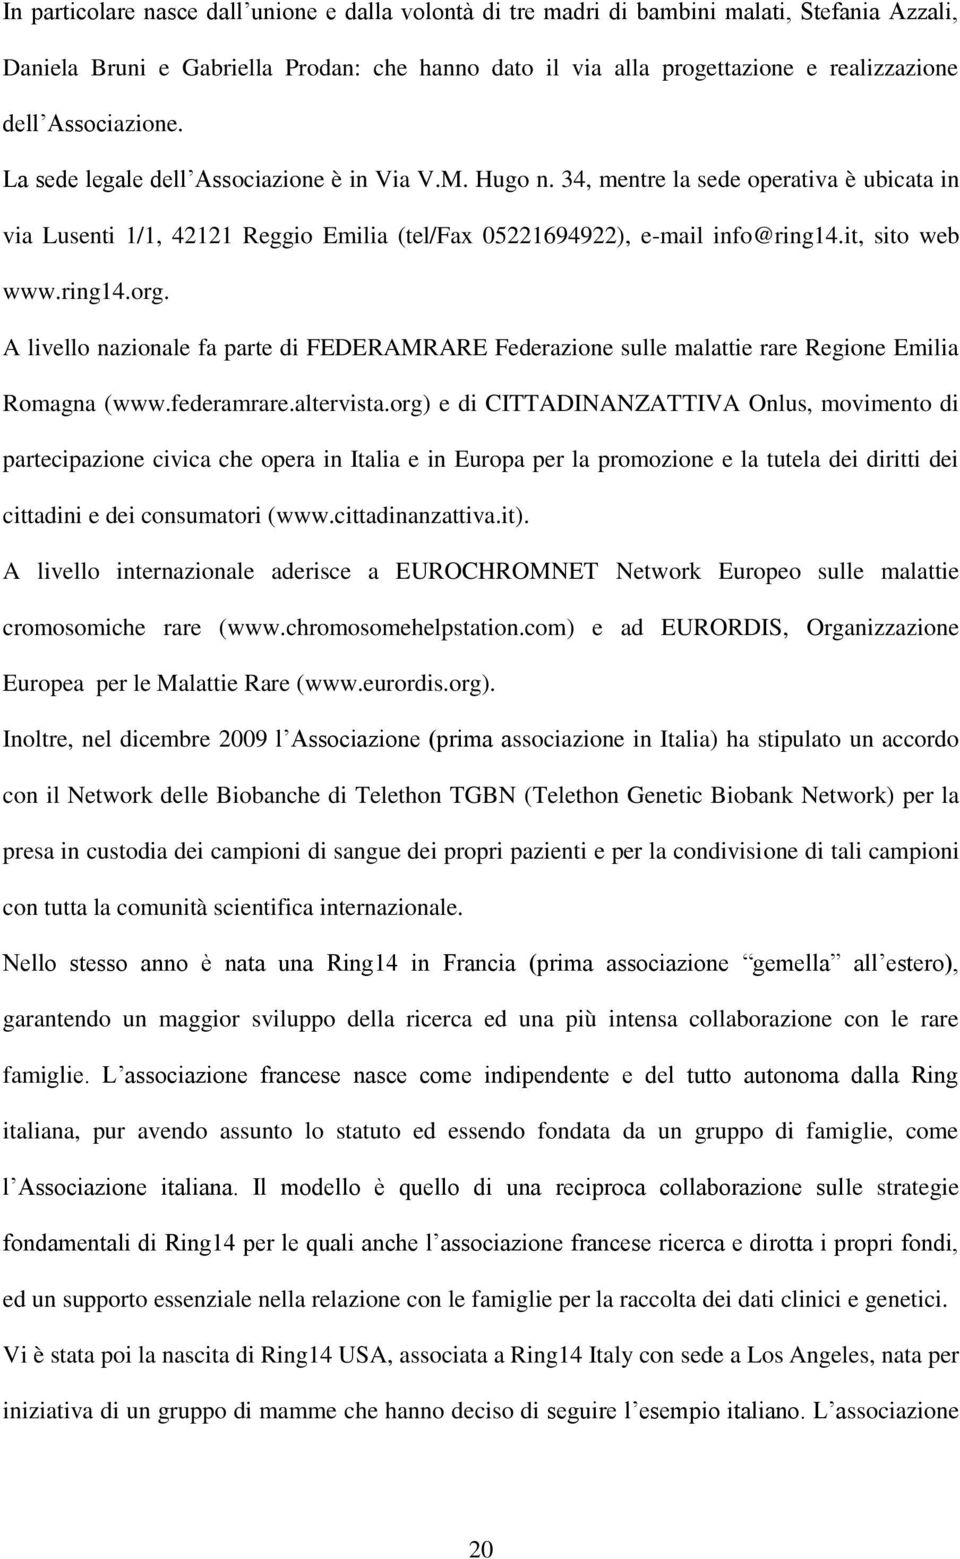 it, sito web www.ring14.org. A livello nazionale fa parte di FEDERAMRARE Federazione sulle malattie rare Regione Emilia Romagna (www.federamrare.altervista.